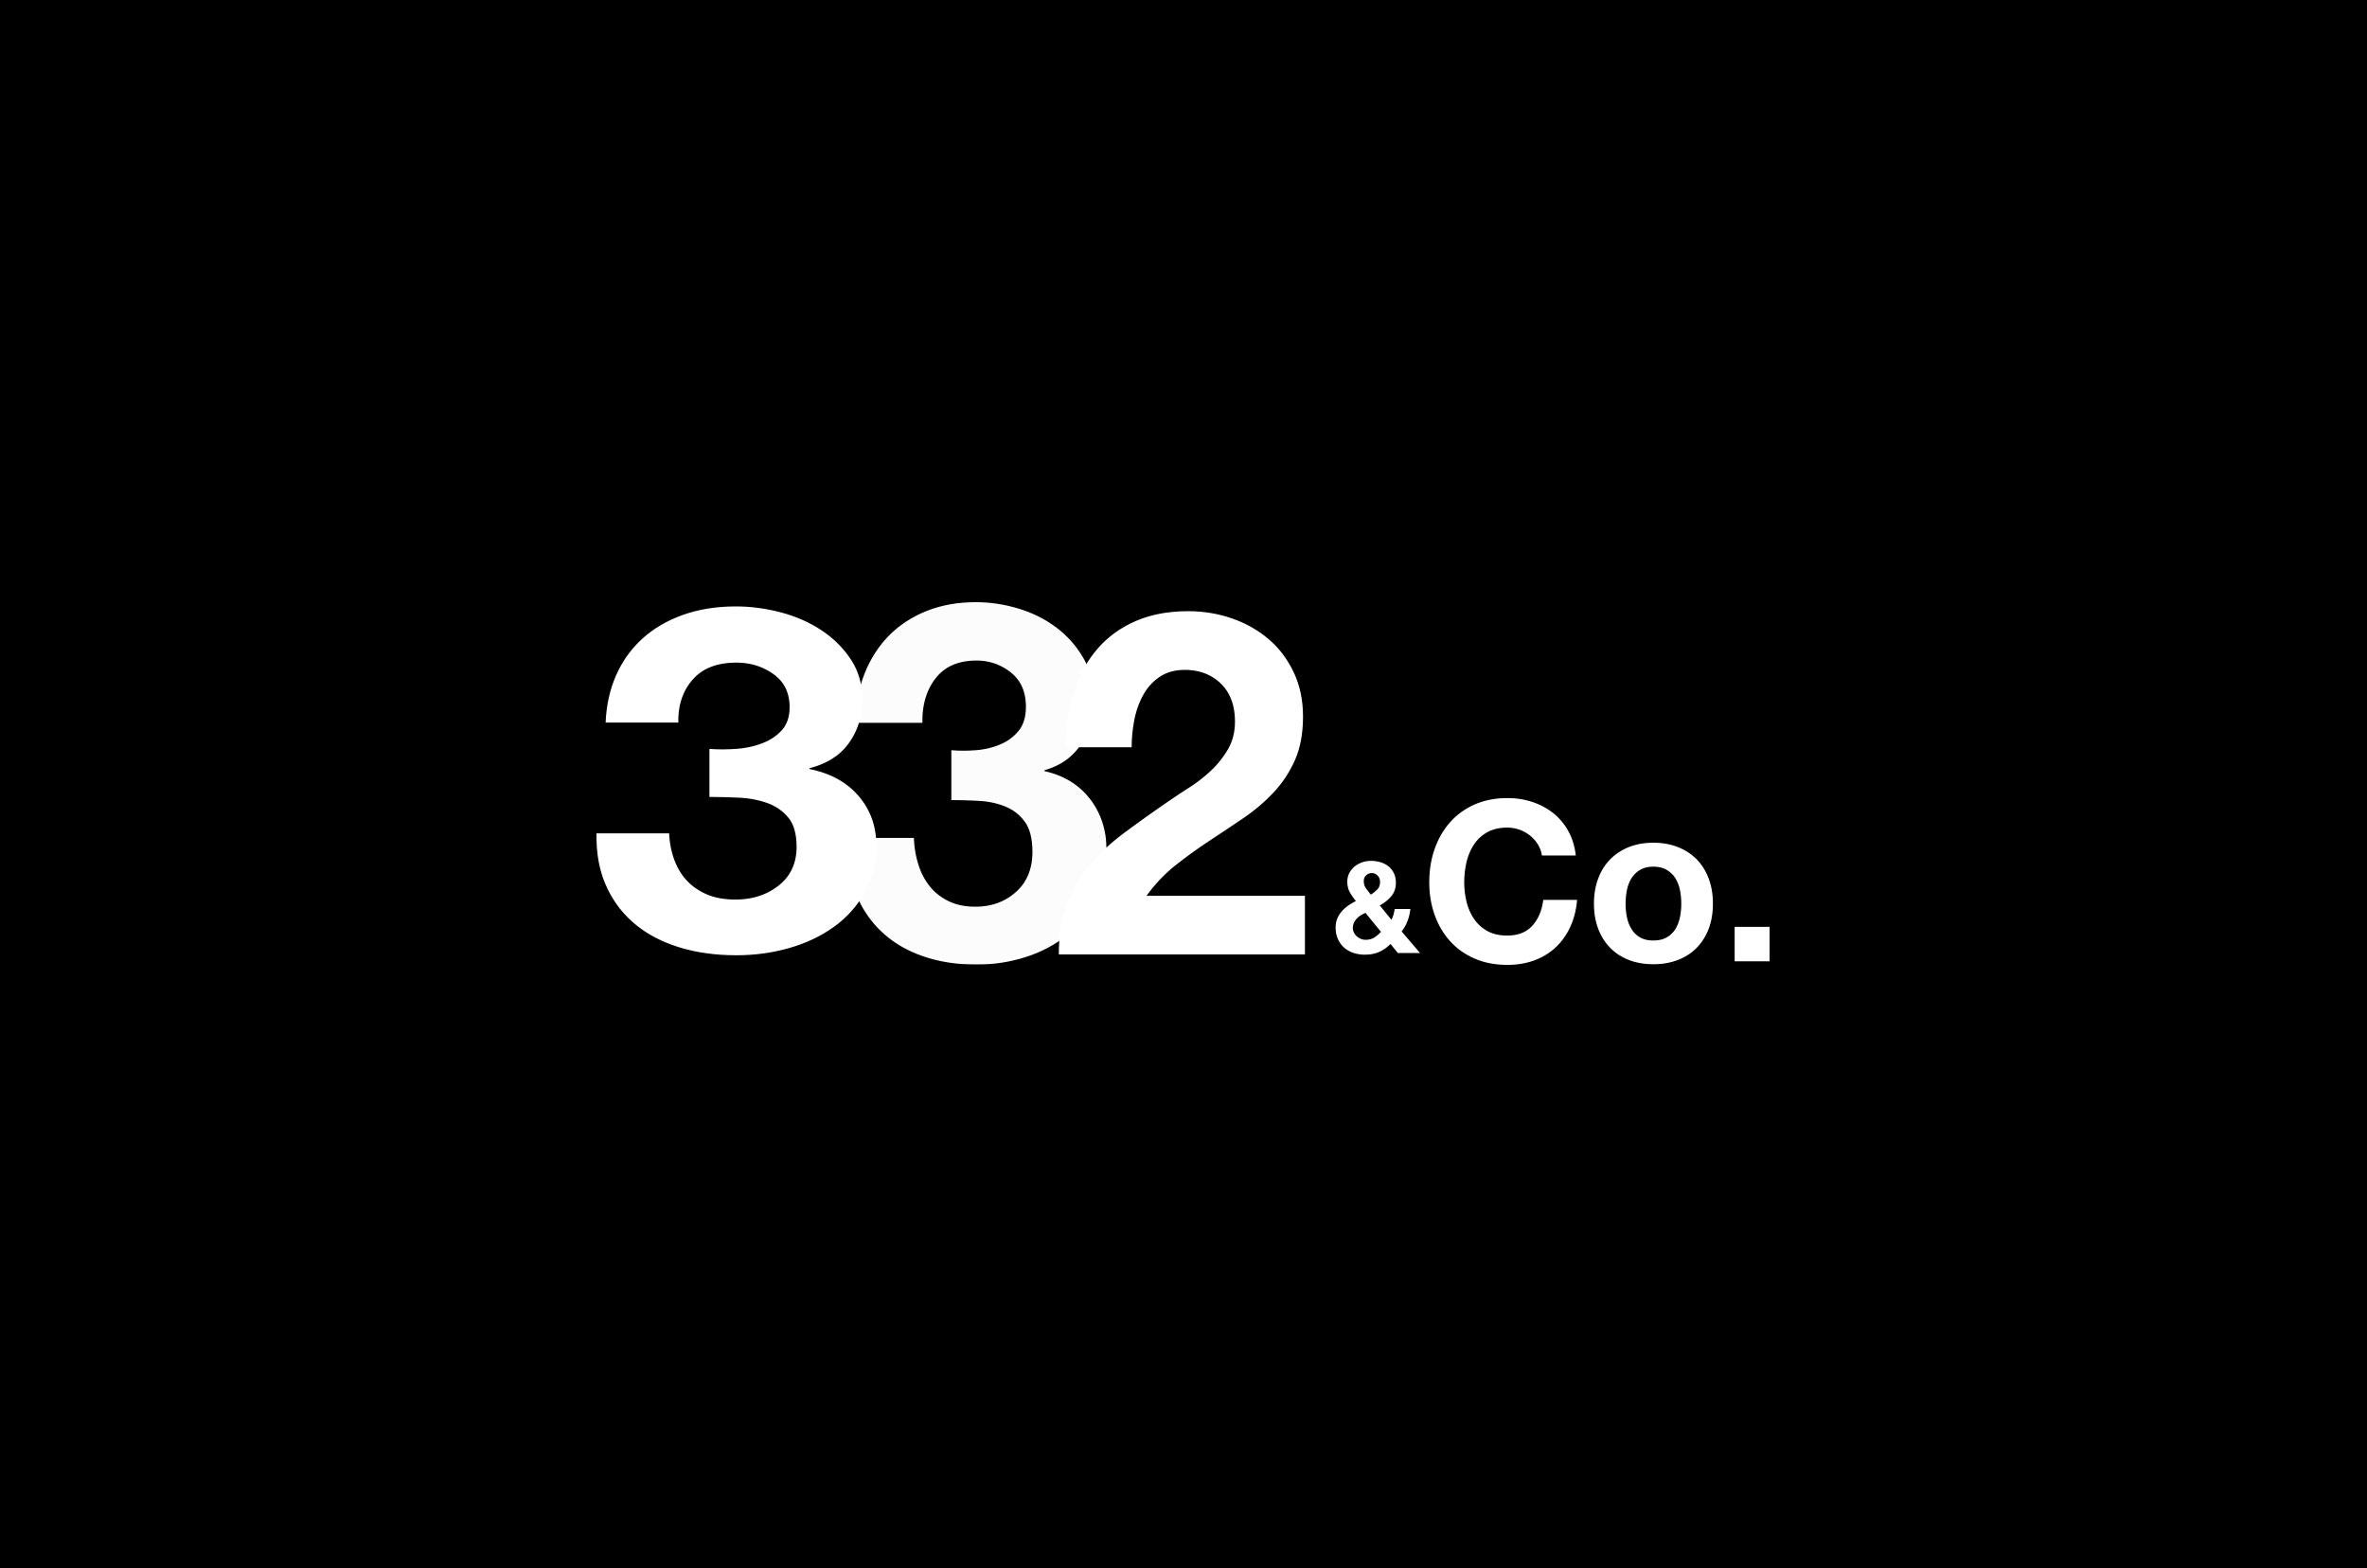 332&CO._7